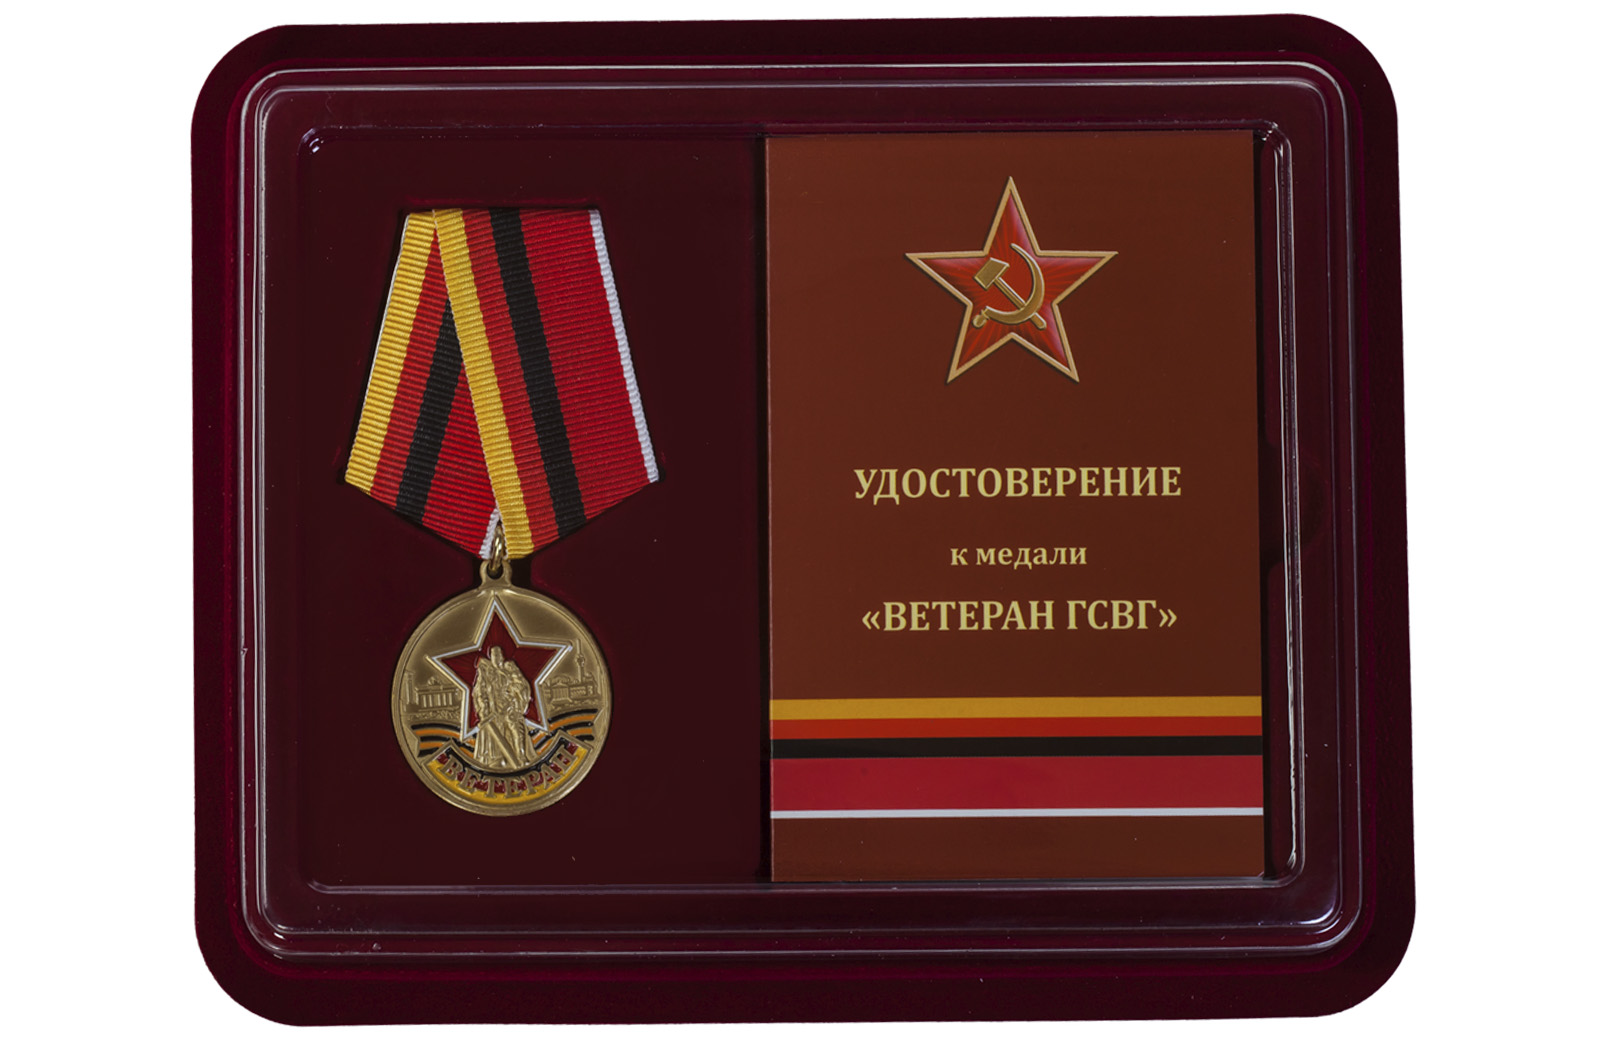 Купить медаль Ветеран ГСВГ в футляре с удостоверением в подарок мужчине